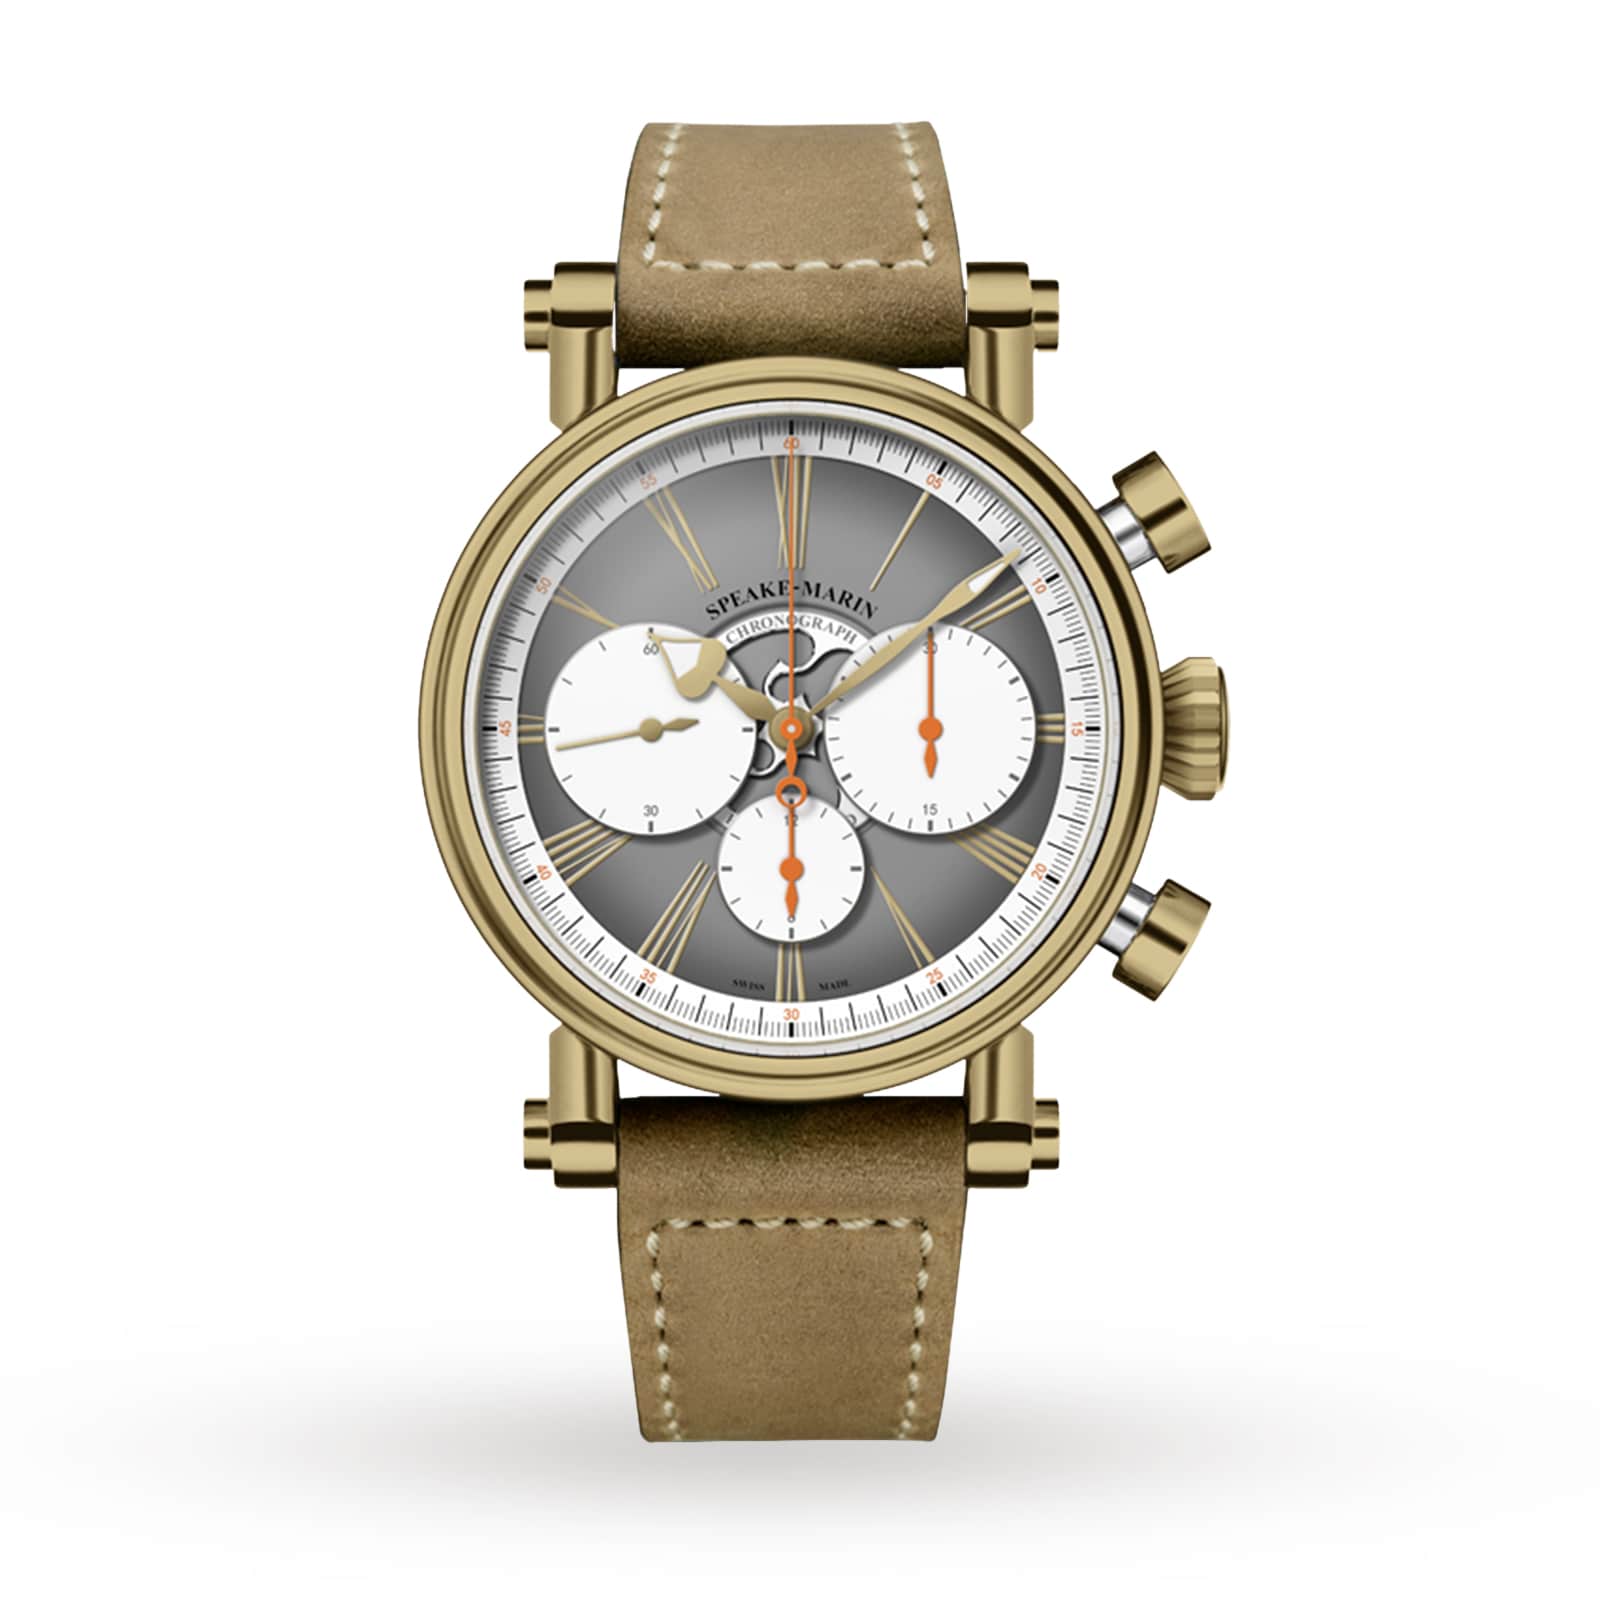 Speake-Marin Haute Horlogerie London Chronograph Bronze 42mm 594208060 |  Watches Of Switzerland US